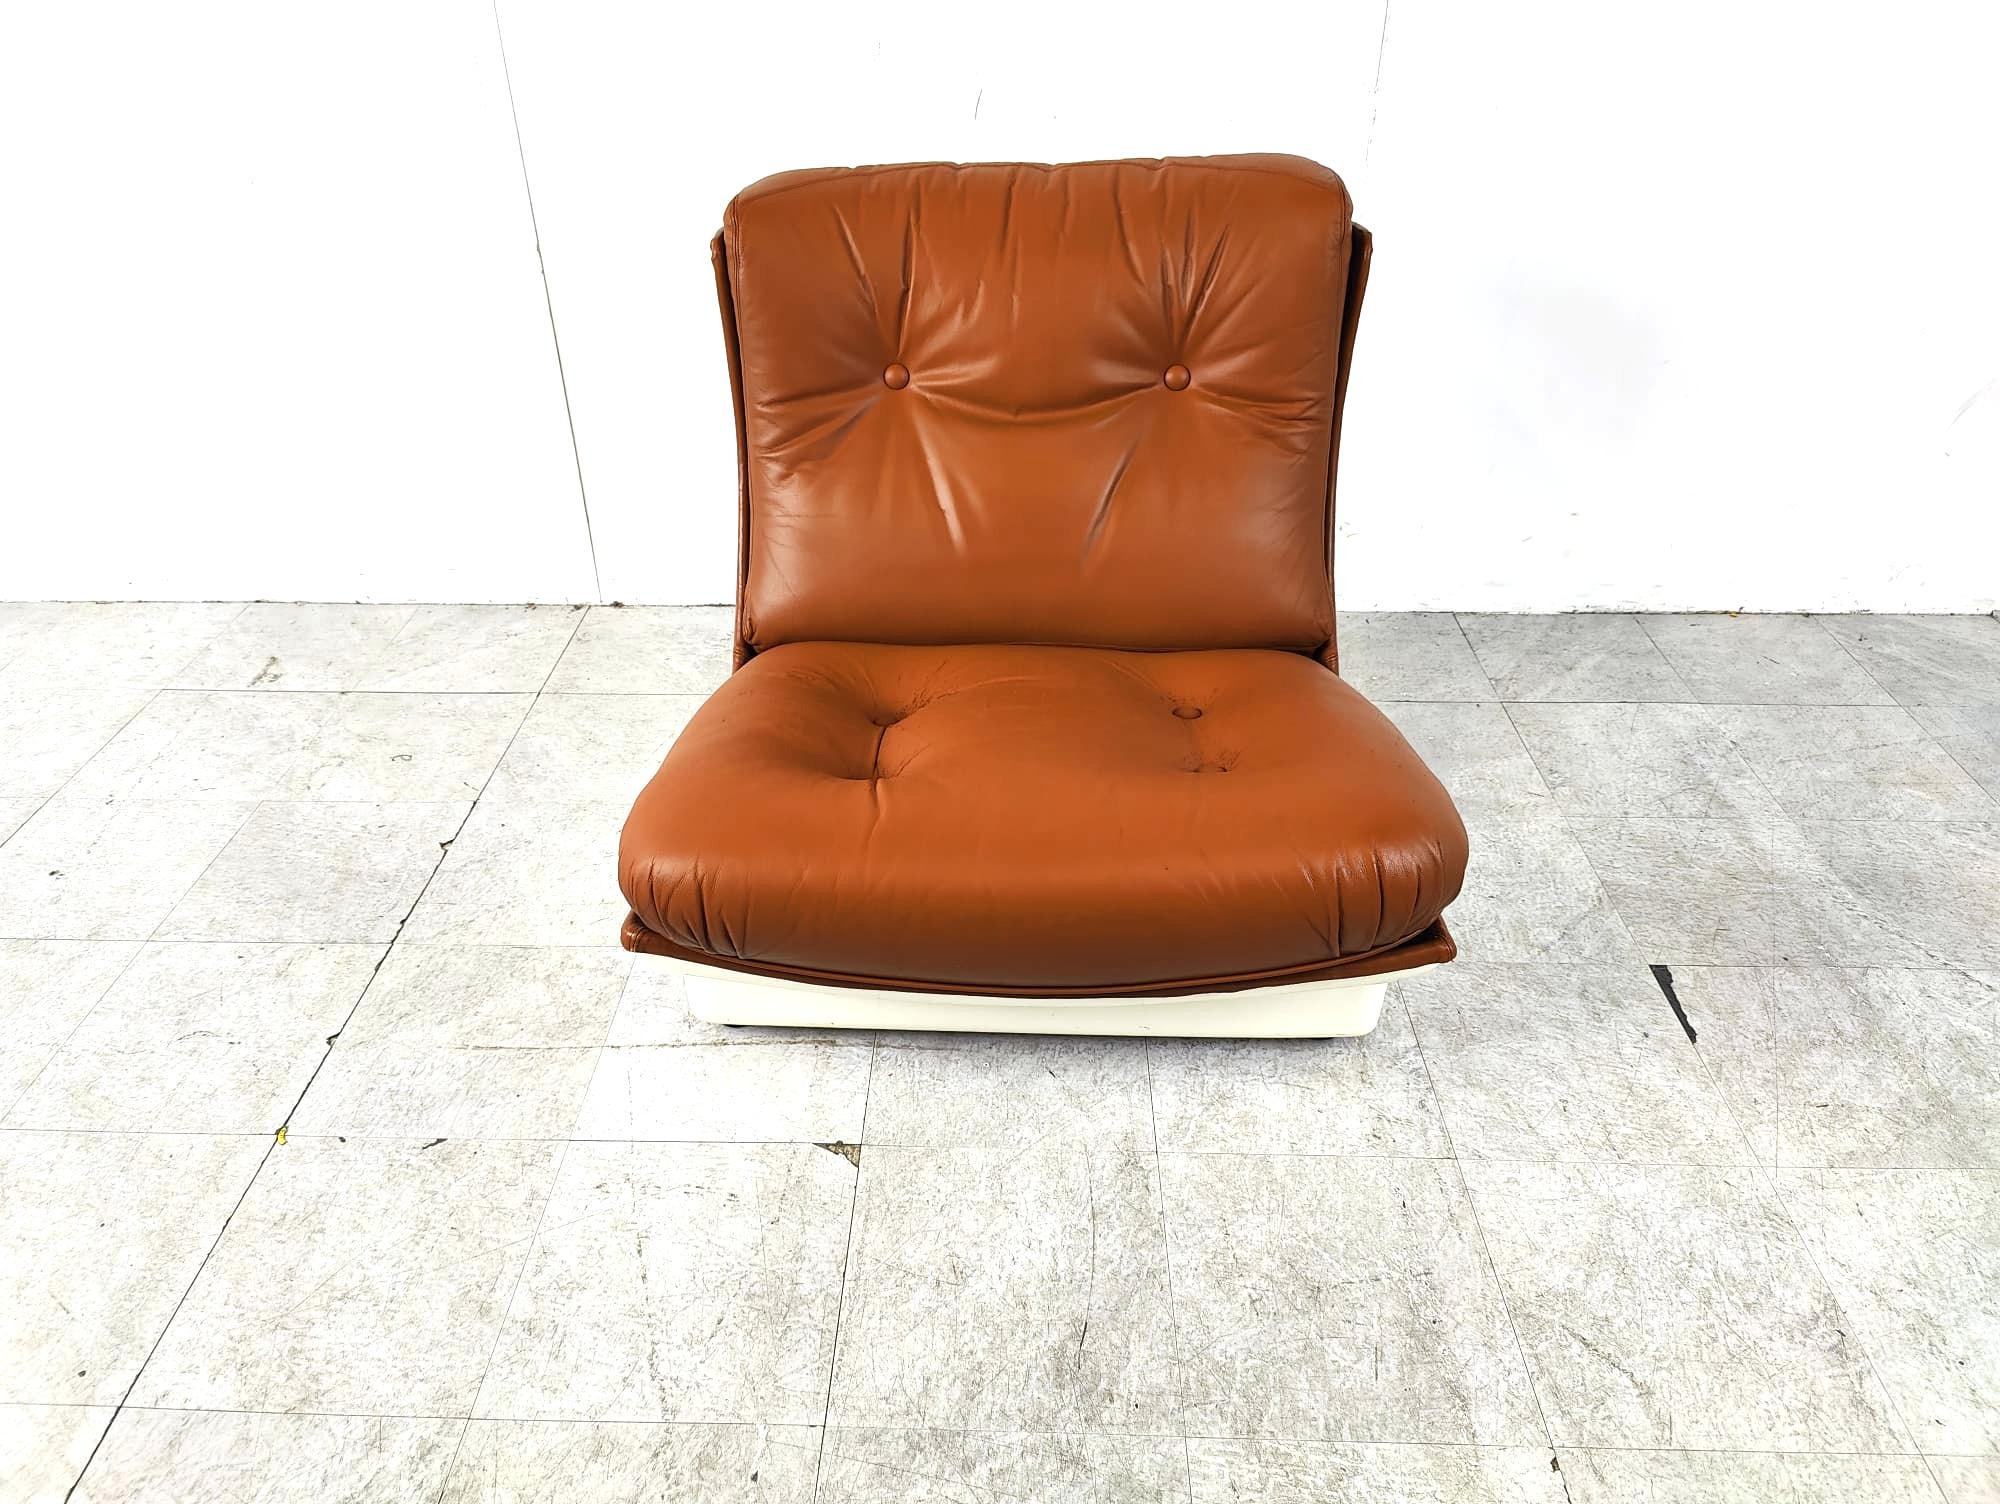 Chaise longue de l'ère spatiale de Airborne international.

La chaise se compose d'une coque en fibre de verre blanche recouverte de cuir butonné marron.

Il est aussi confortable qu'il en a l'air.

Bon état, sellerie d'origine patinée, pas de